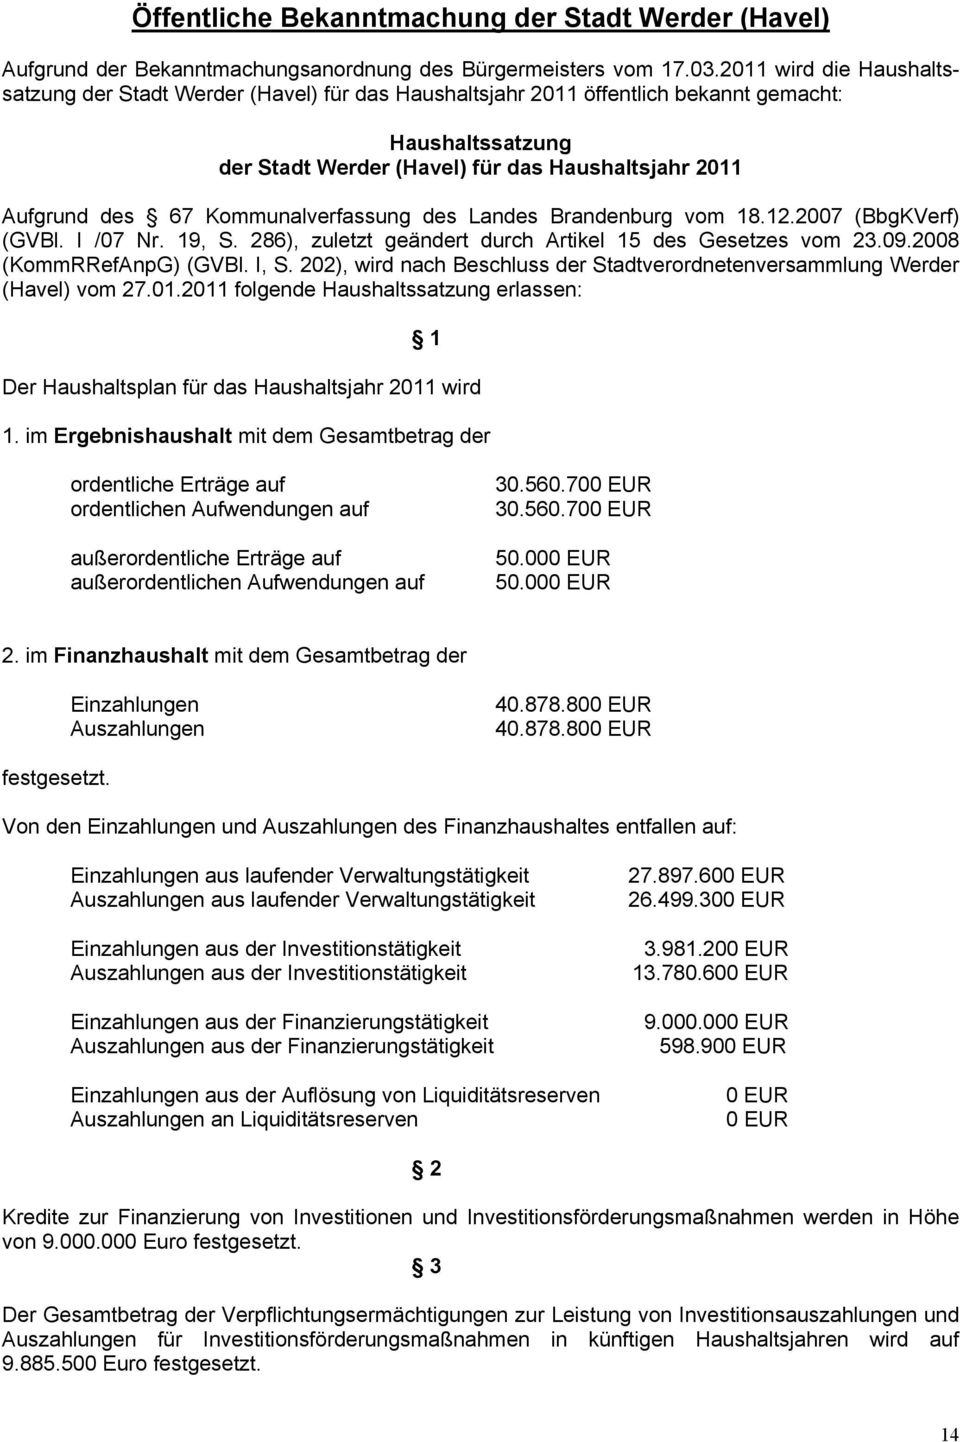 Kommunalverfassung des Landes Brandenburg vom 18.12.2007 (BbgKVerf) (GVBl. I /07 Nr. 19, S. 286), zuletzt geändert durch Artikel 15 des Gesetzes vom 23.09.2008 (KommRRefAnpG) (GVBl. I, S.